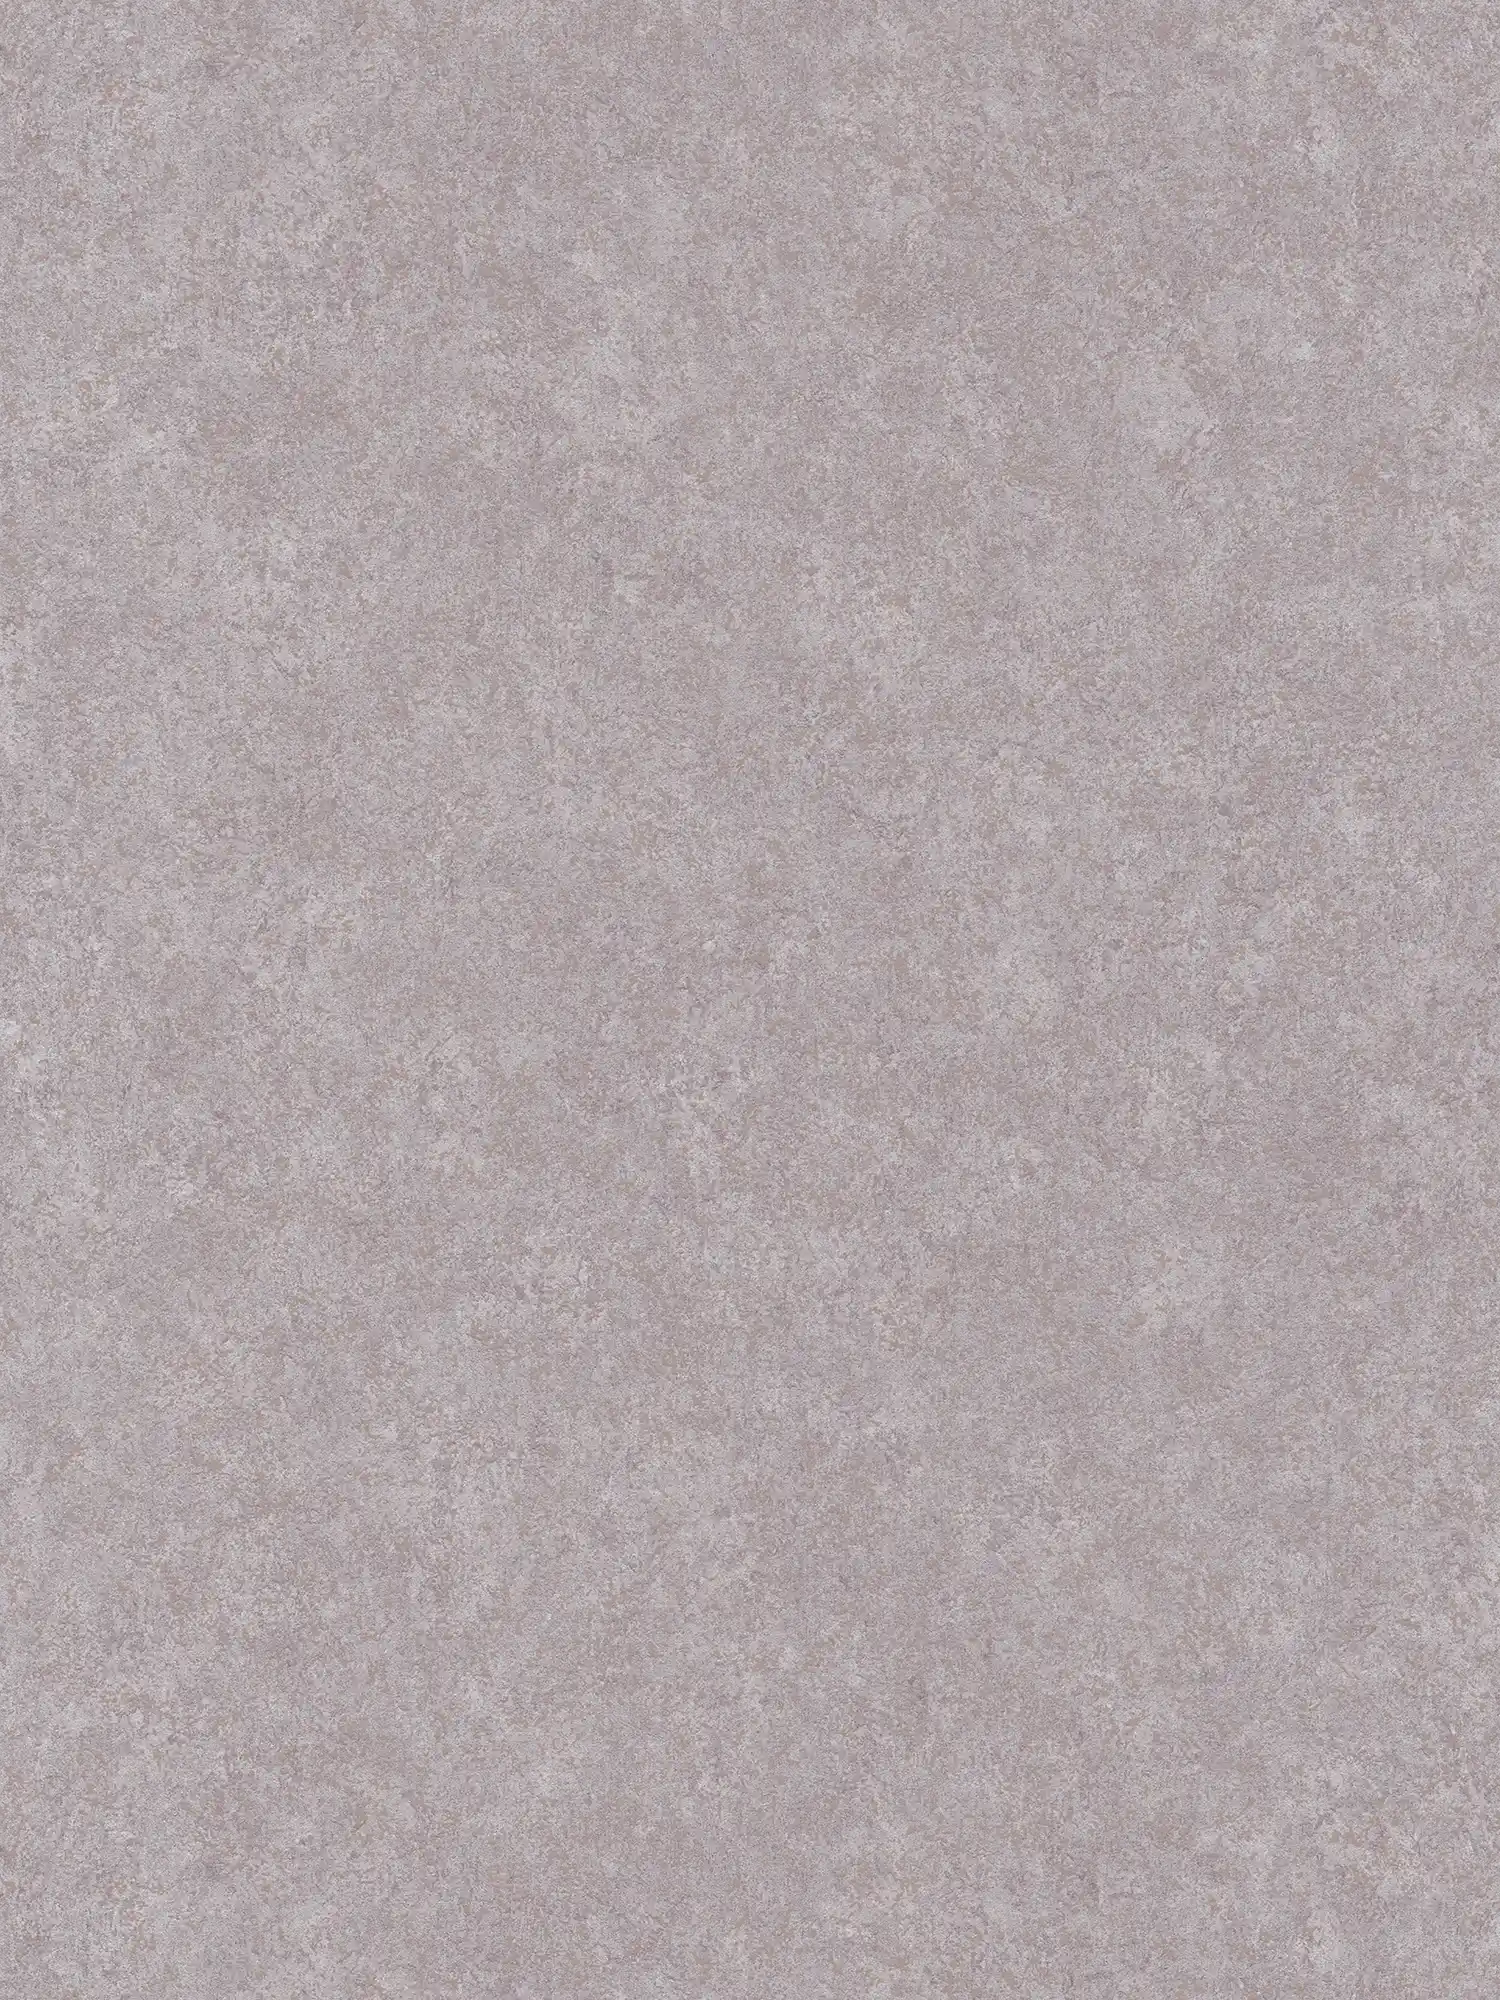         Neutrale Putzoptik Tapete mit matter Oberfläche – Grau
    